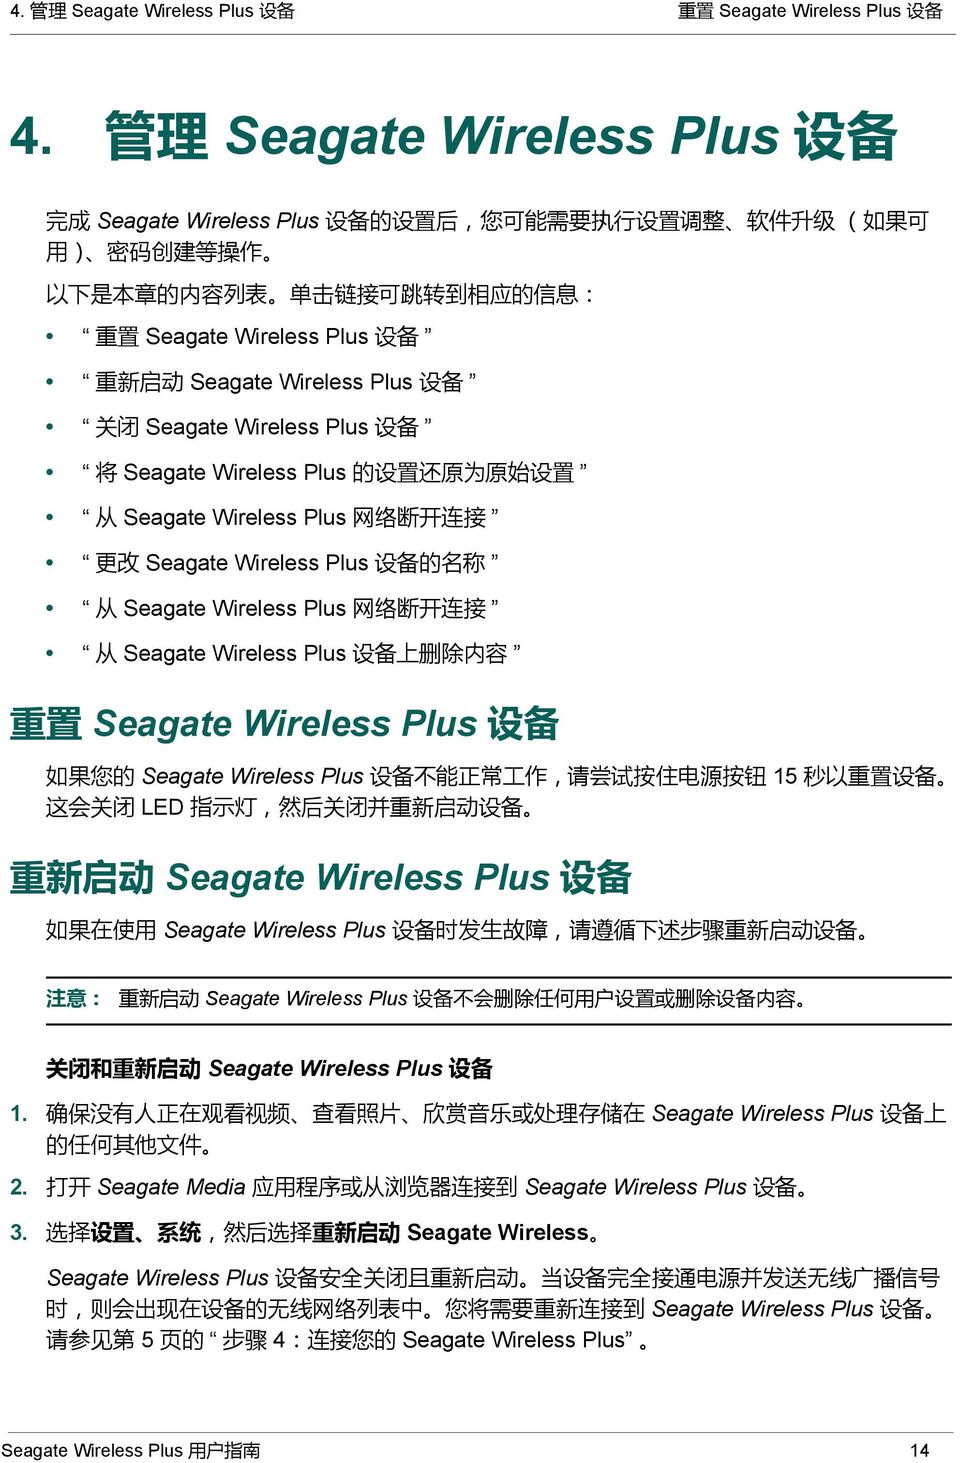 设 备 重 新 启 动 Seagate Wireless Plus 设 备 关 闭 Seagate Wireless Plus 设 备 将 Seagate Wireless Plus 的 设 置 还 原 为 原 始 设 置 从 Seagate Wireless Plus 网 络 断 开 连 接 更 改 Seagate Wireless Plus 设 备 的 名 称 从 Seagate